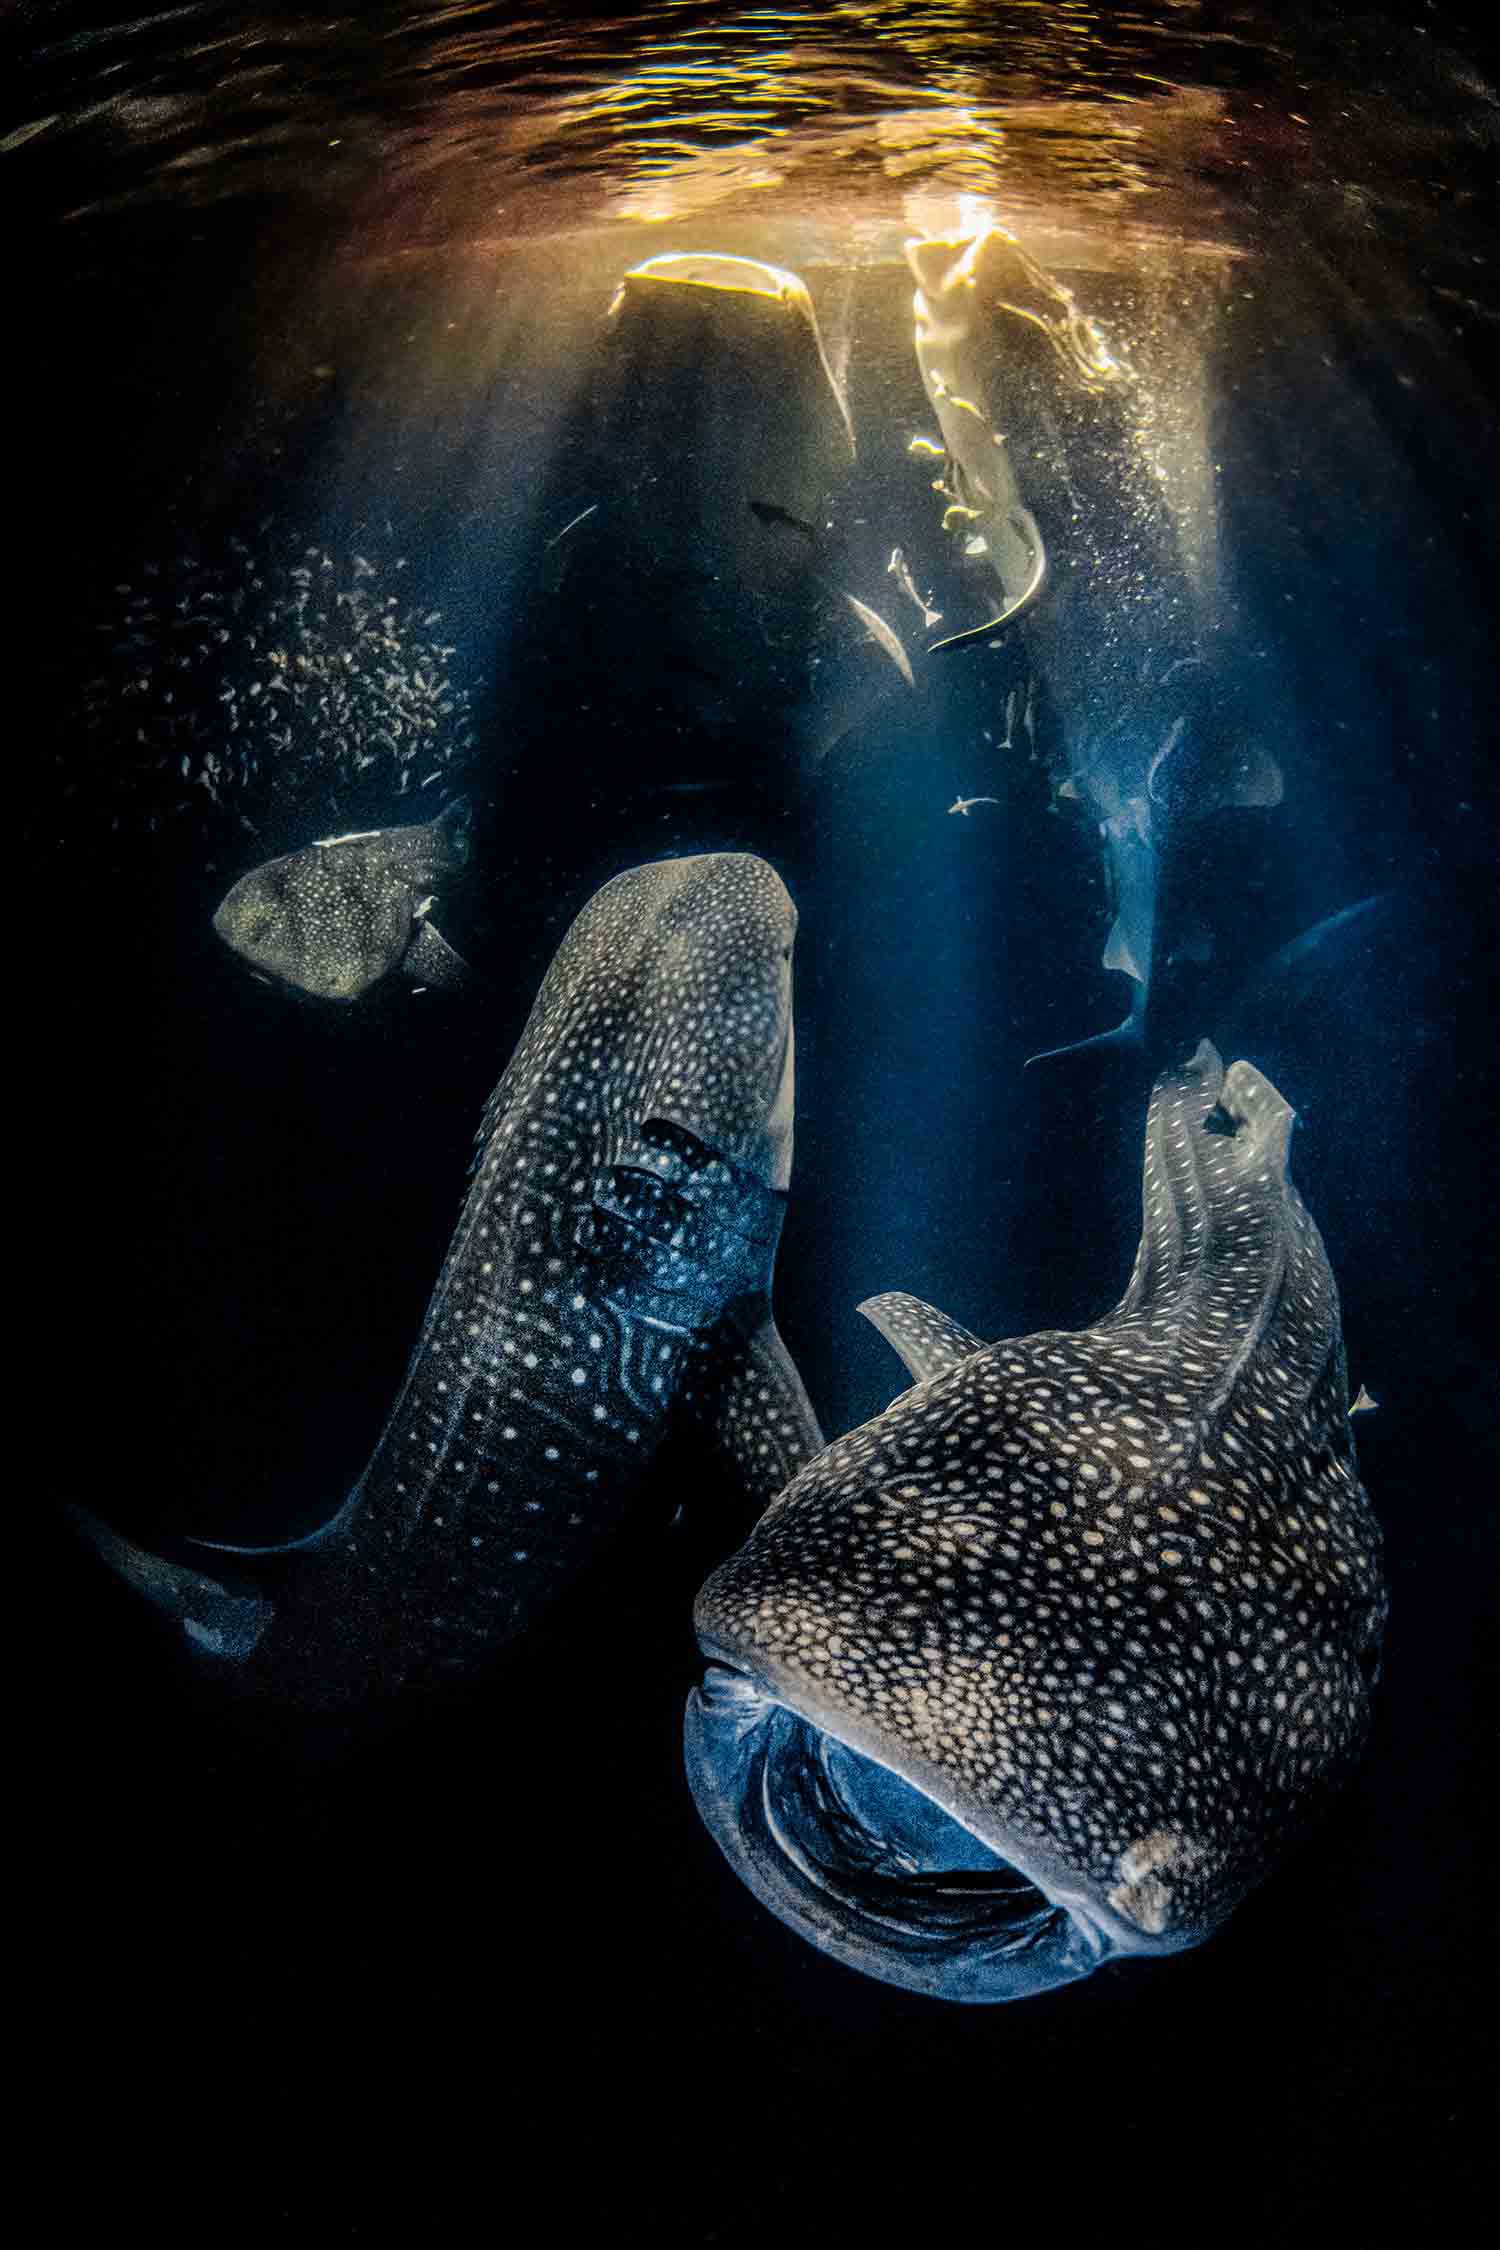 Người chiến thắng chung cuộc của cuộc thi là nhiếp ảnh gia người Tây Ban Nha Rafael Fernandez Caballero. Bức ảnh đoạt giải của anh chụp 5 con cá mập voi cùng nhau kiếm ăn vào ban đêm ở vùng biển Ari Atoll, Maldives. Chia sẻ về tác phẩm, nhiếp ảnh gia nói: Phép thuật xảy ra trong đại dương hàng ngày, nhưng nếu chúng ta không bảo vệ môi trường nước và cá mập, những khoảnh khắc này sẽ sớm trở thành dĩ vãng.